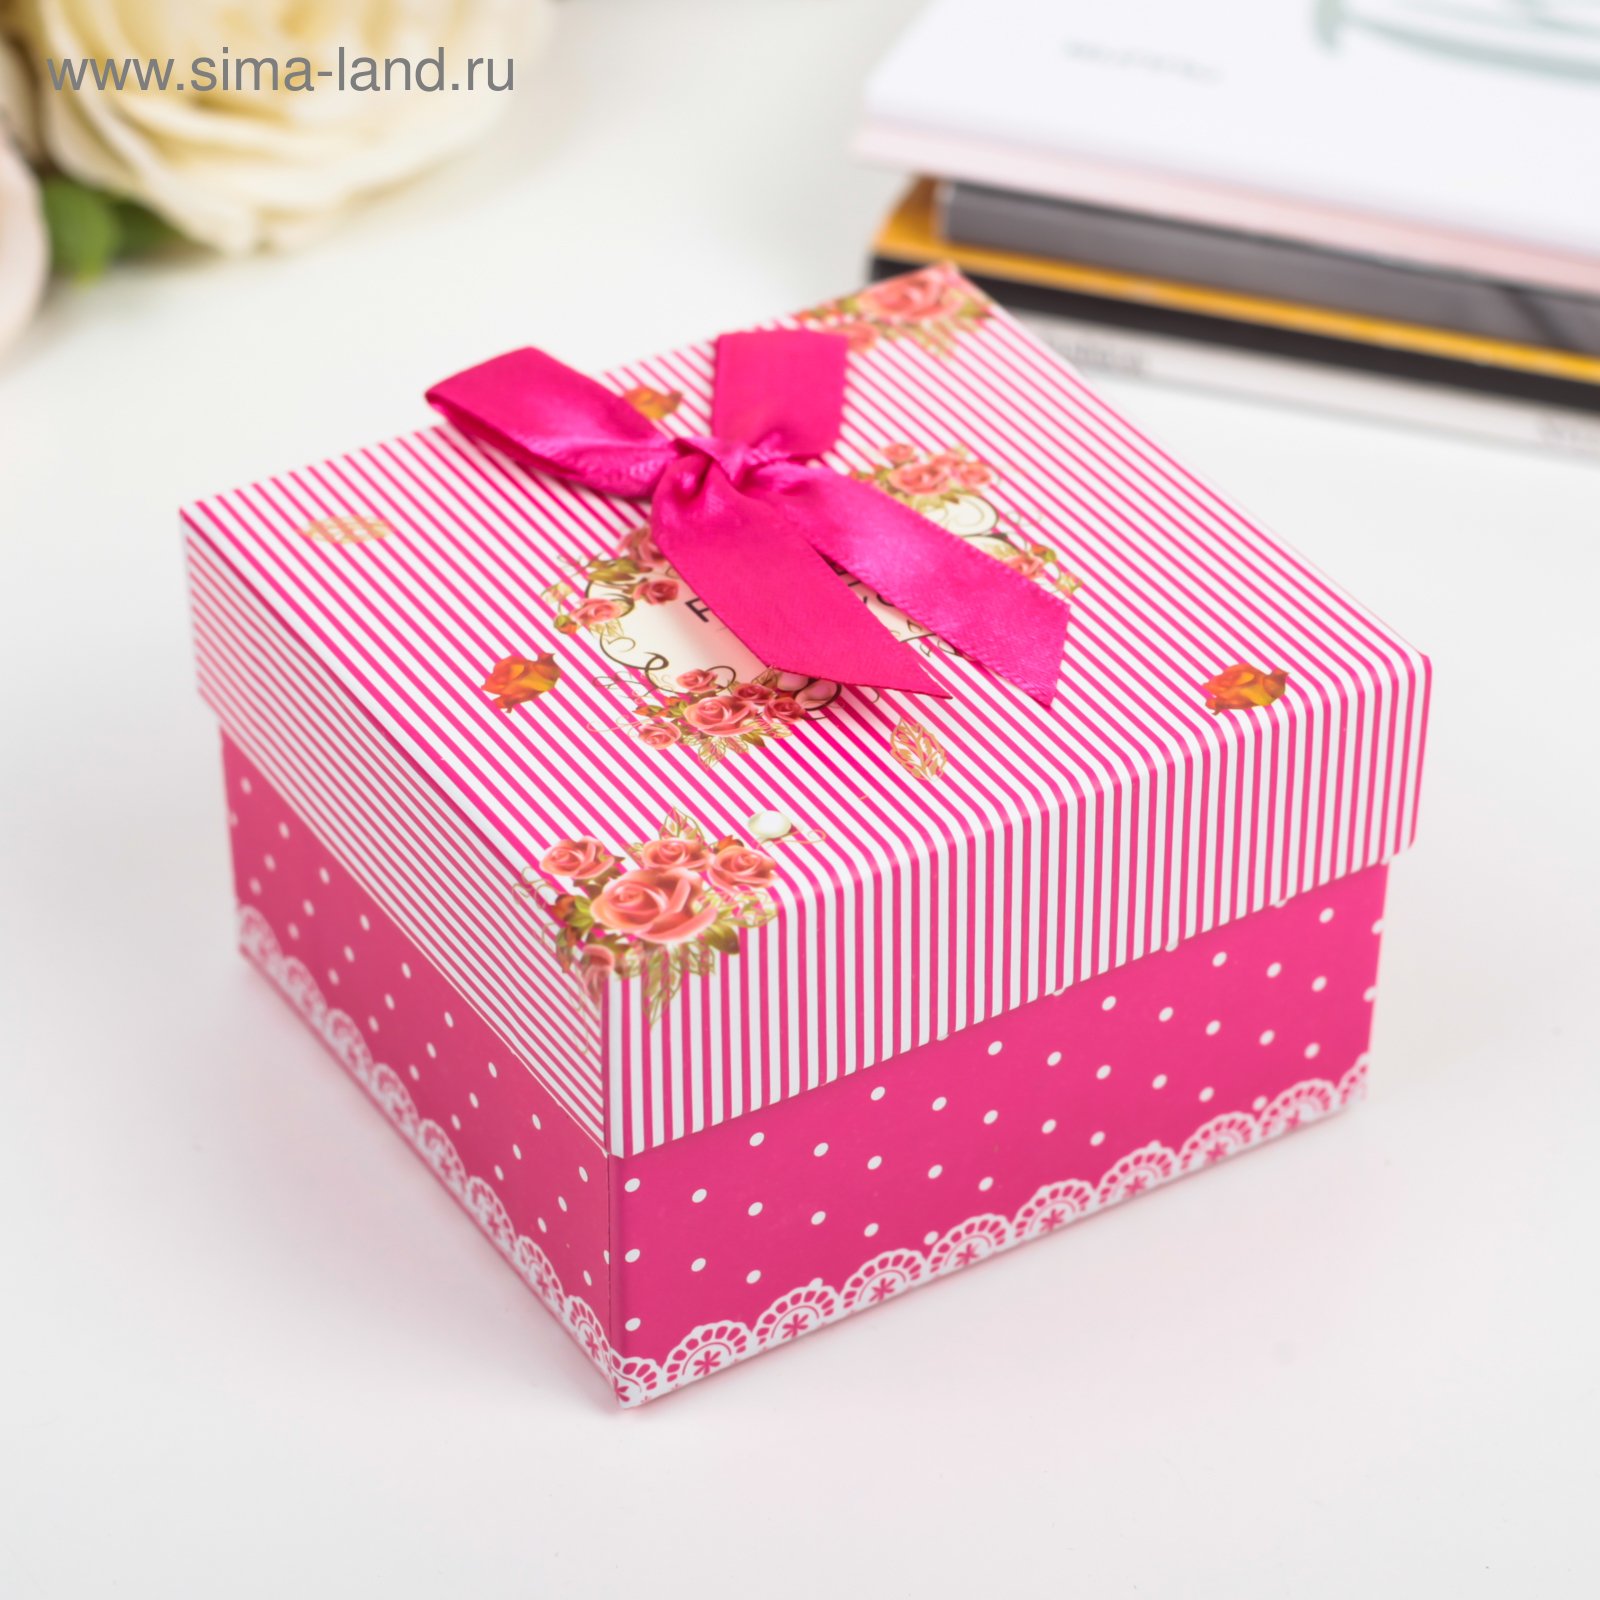 Коробок подарков. Коробка для подарка. Красивые подарочные коробки. Небольшие коробки для подарков. Красивая коробка для подарка.